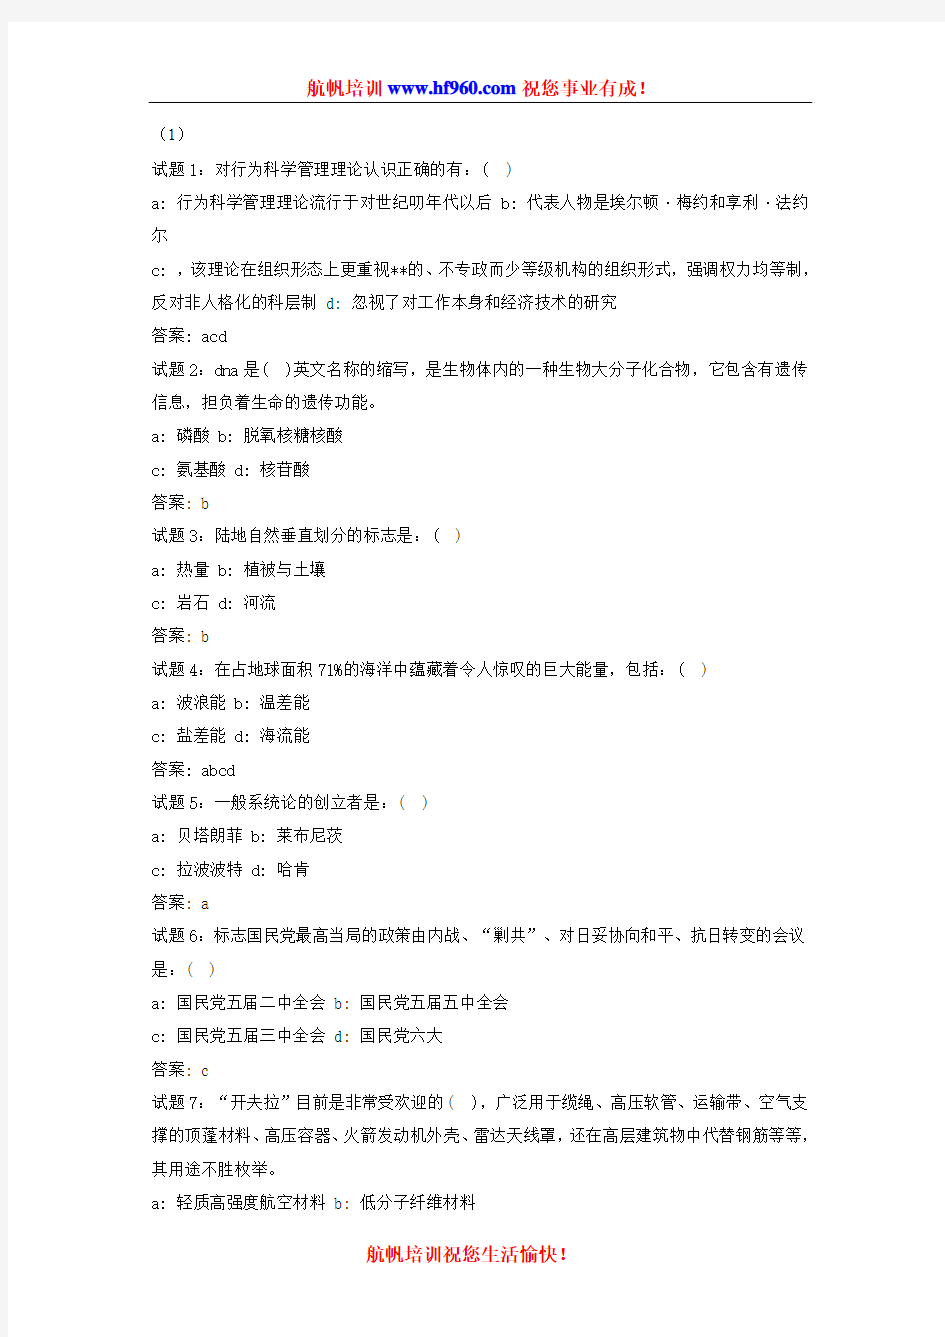 2014年丽江事业单位工作人员招录考试复习题